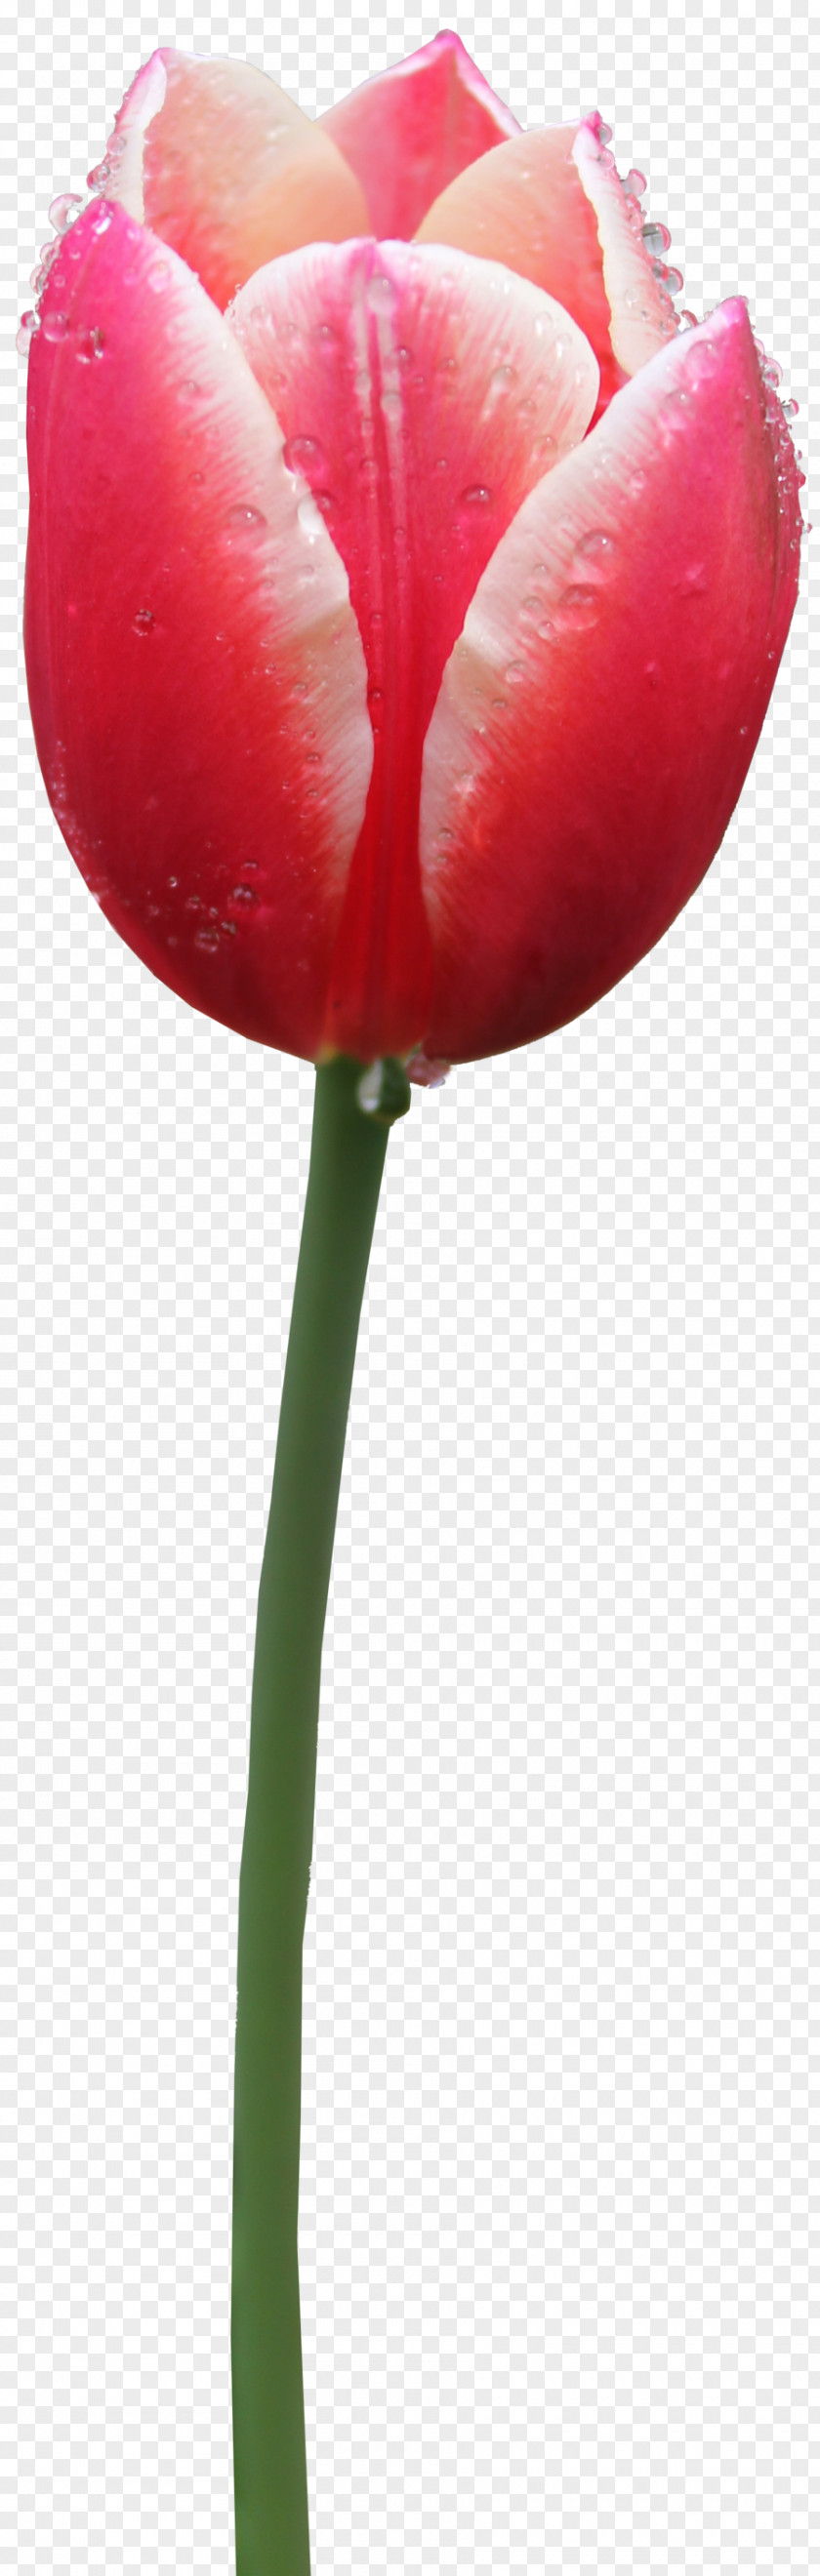 Tulip Free Image PNG